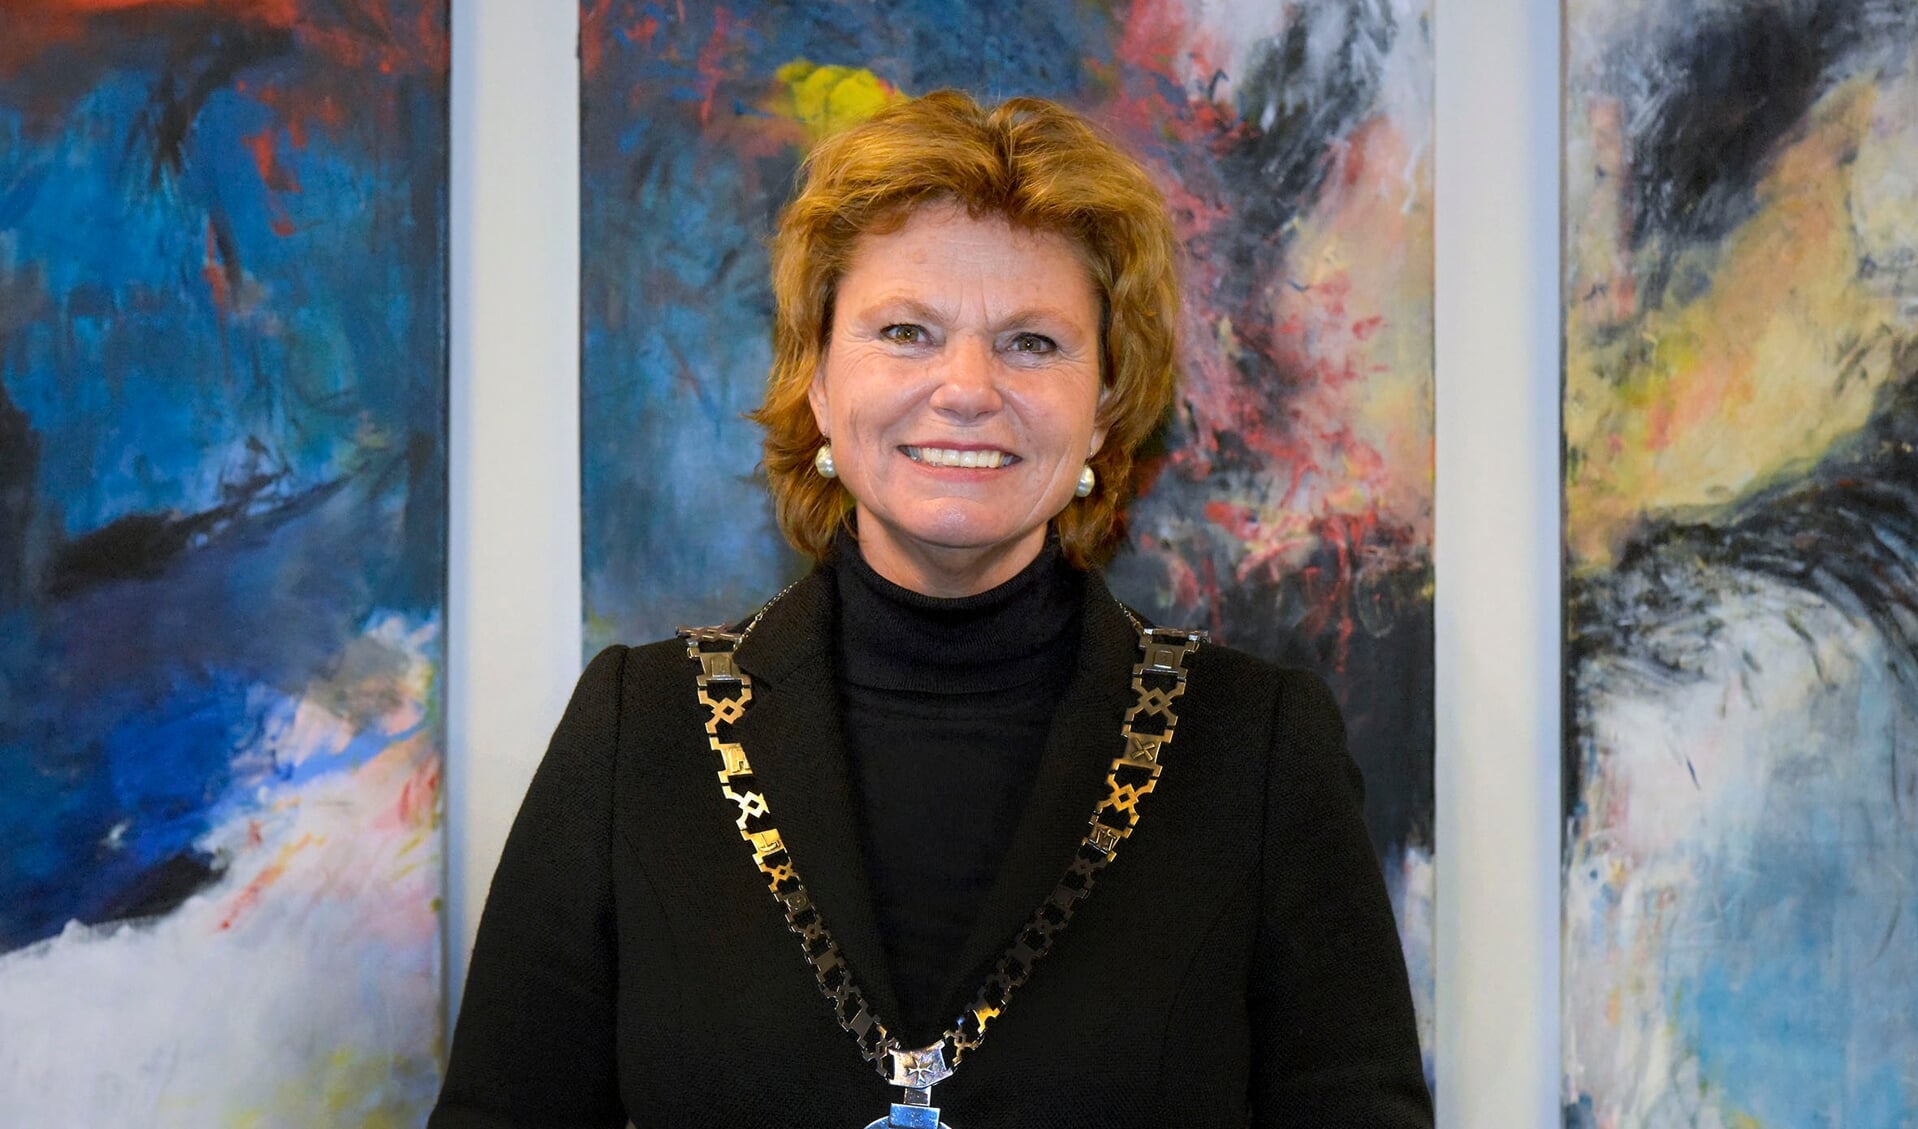 Burgemeester Petra van Hartskamp is door de Kroon herbenoemd voor een nieuwe termijn van 6 jaar als eerste burger van Montfoort en Linschoten. 